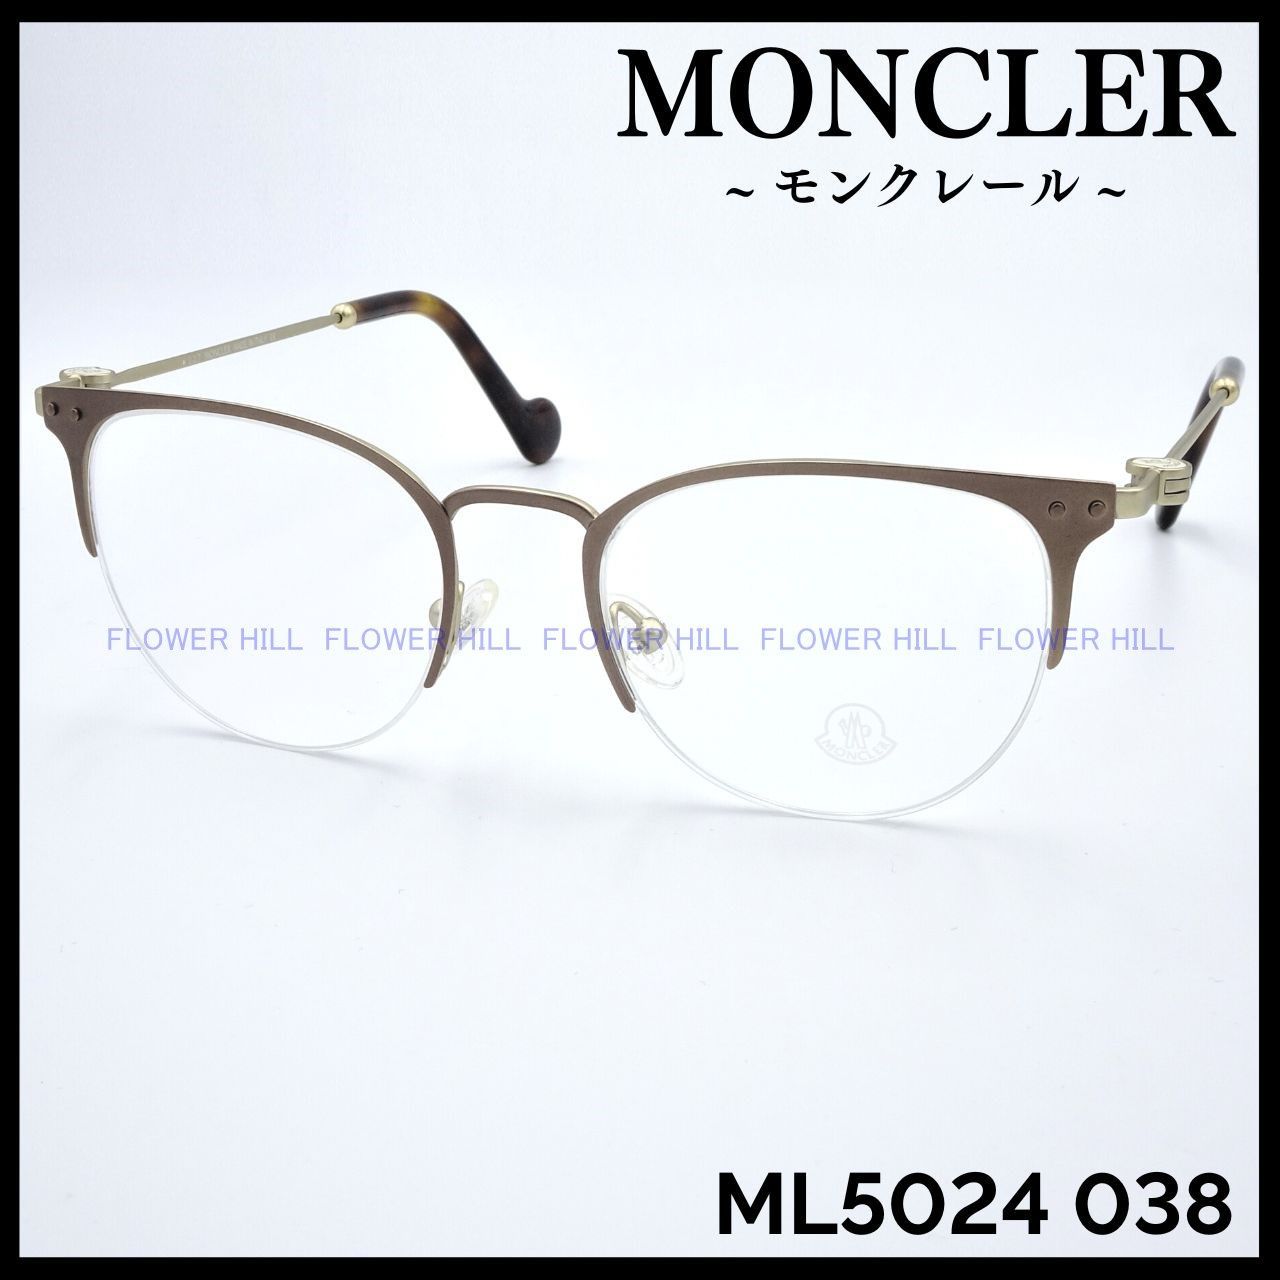 モンクレール ML5024 038 メガネ フレーム ブロンズ イタリア製-